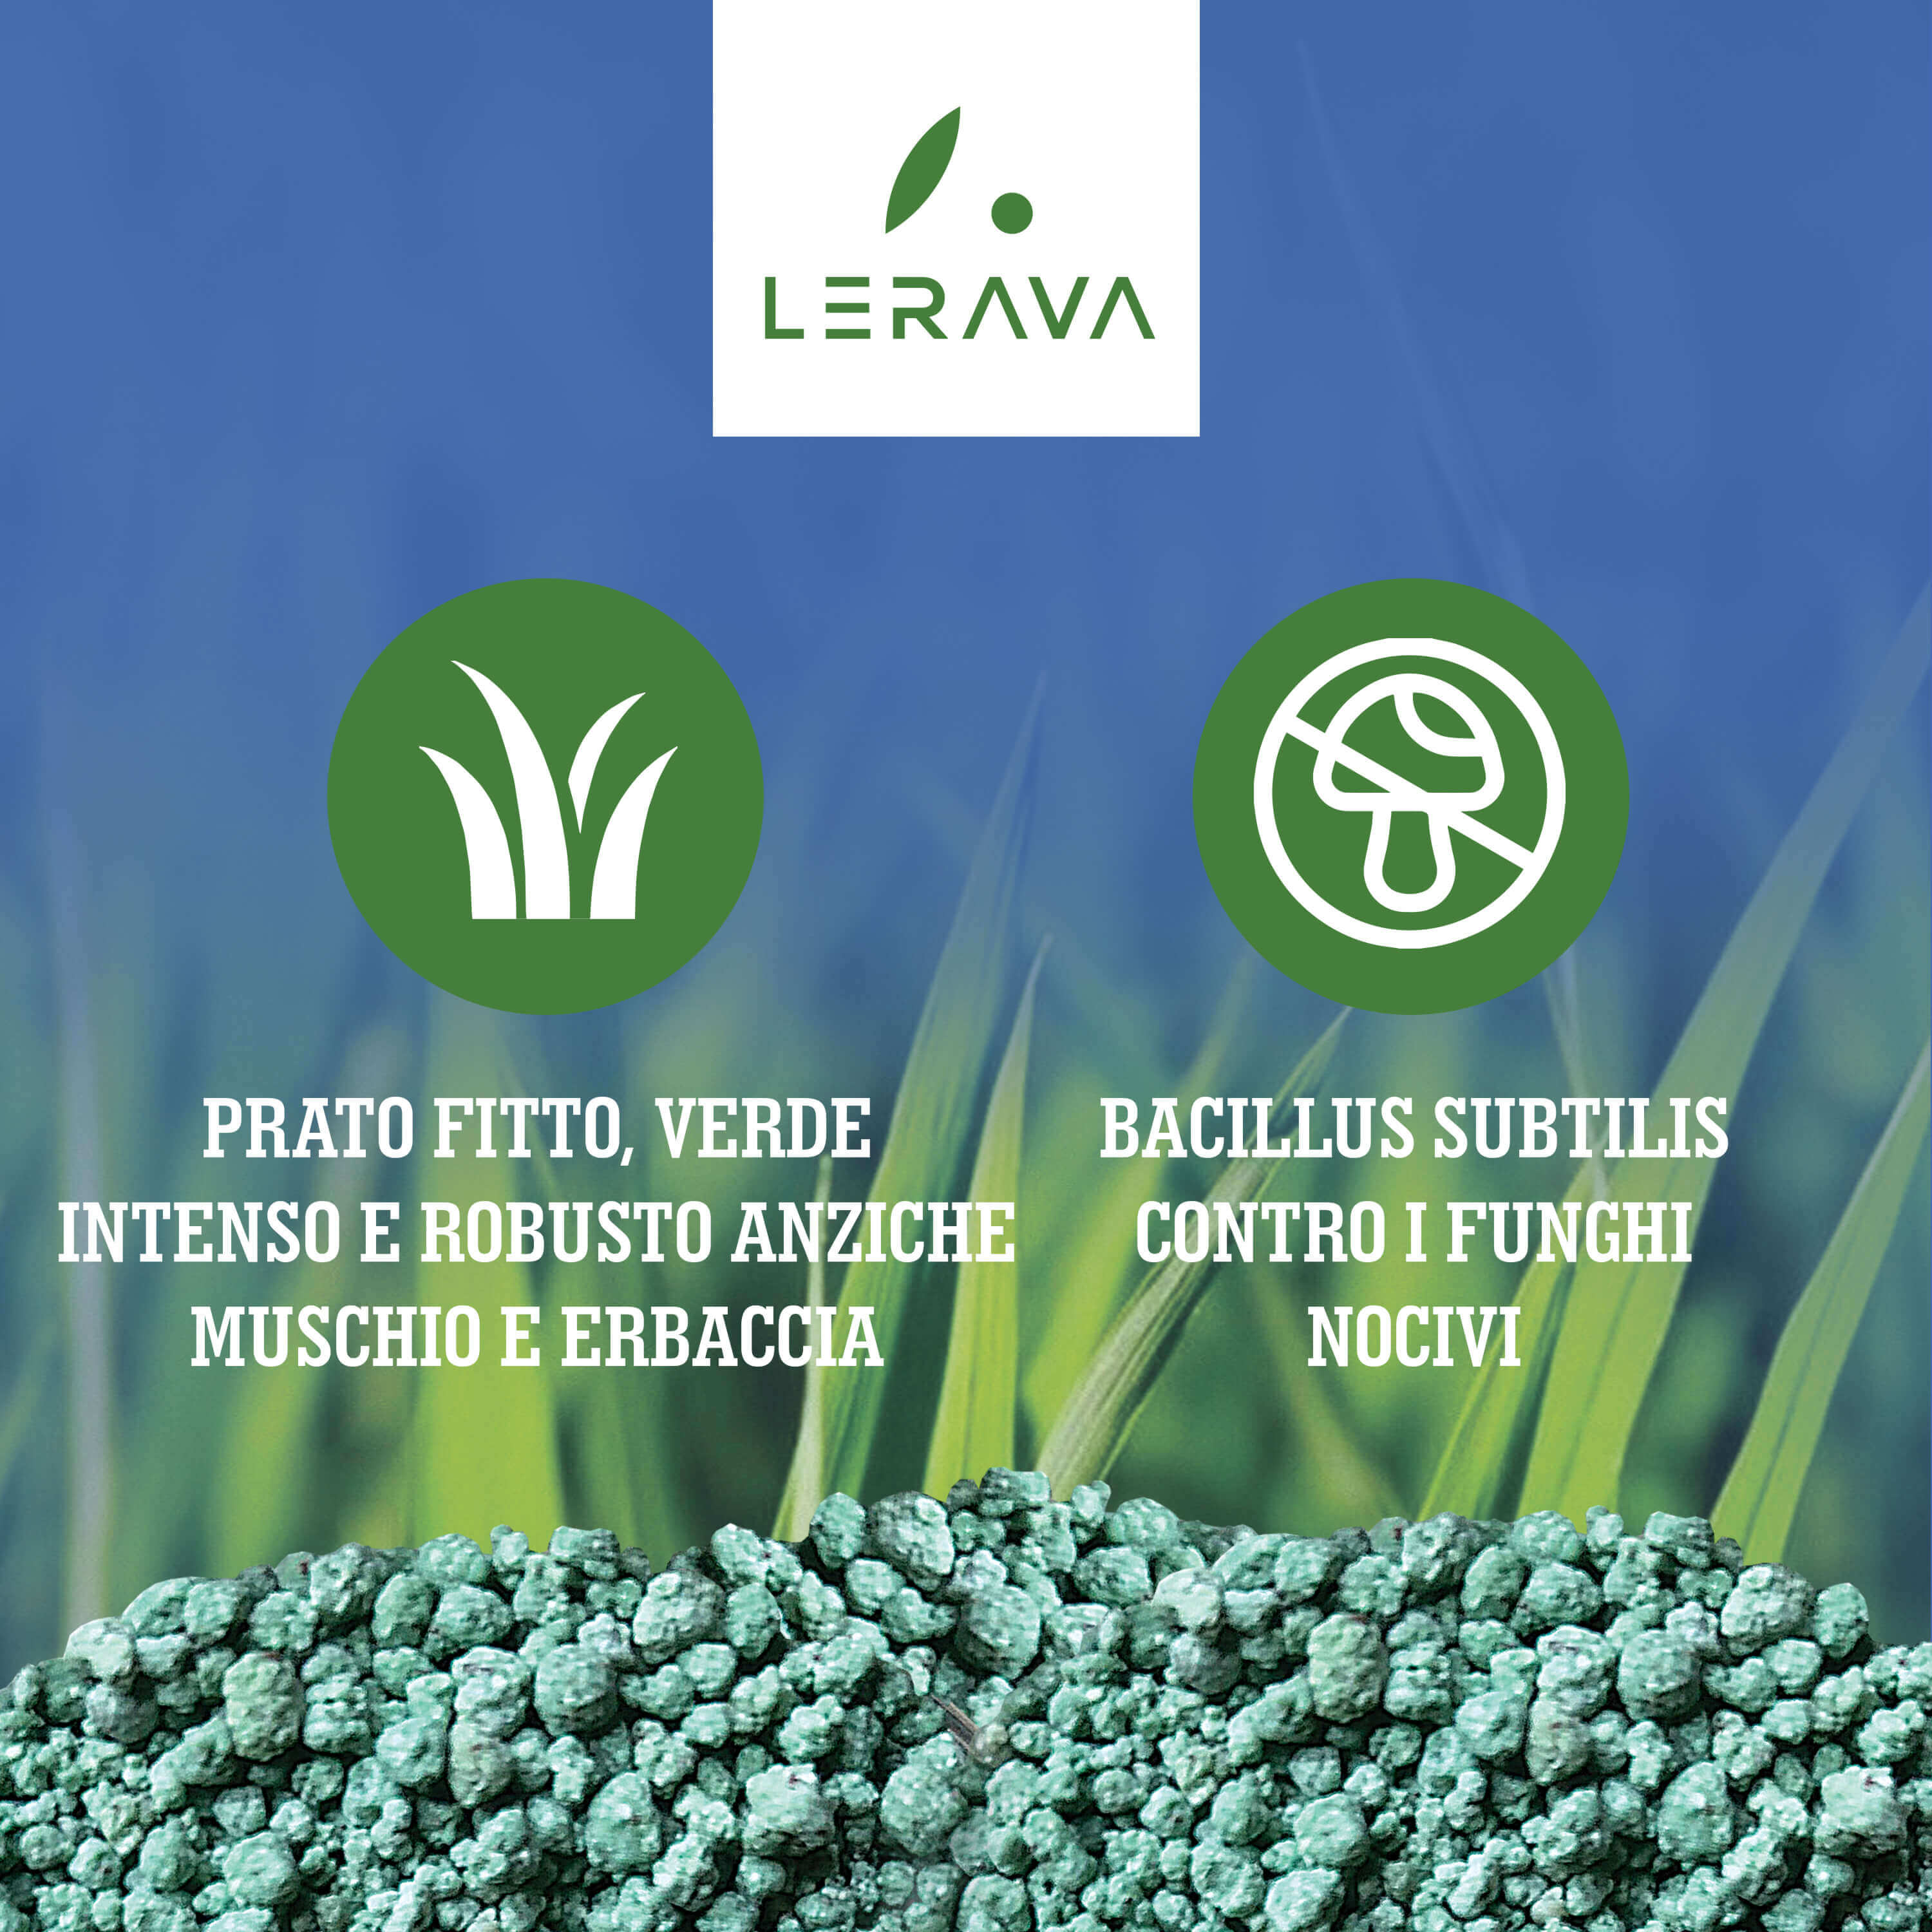 Spring - lawn fertilizer